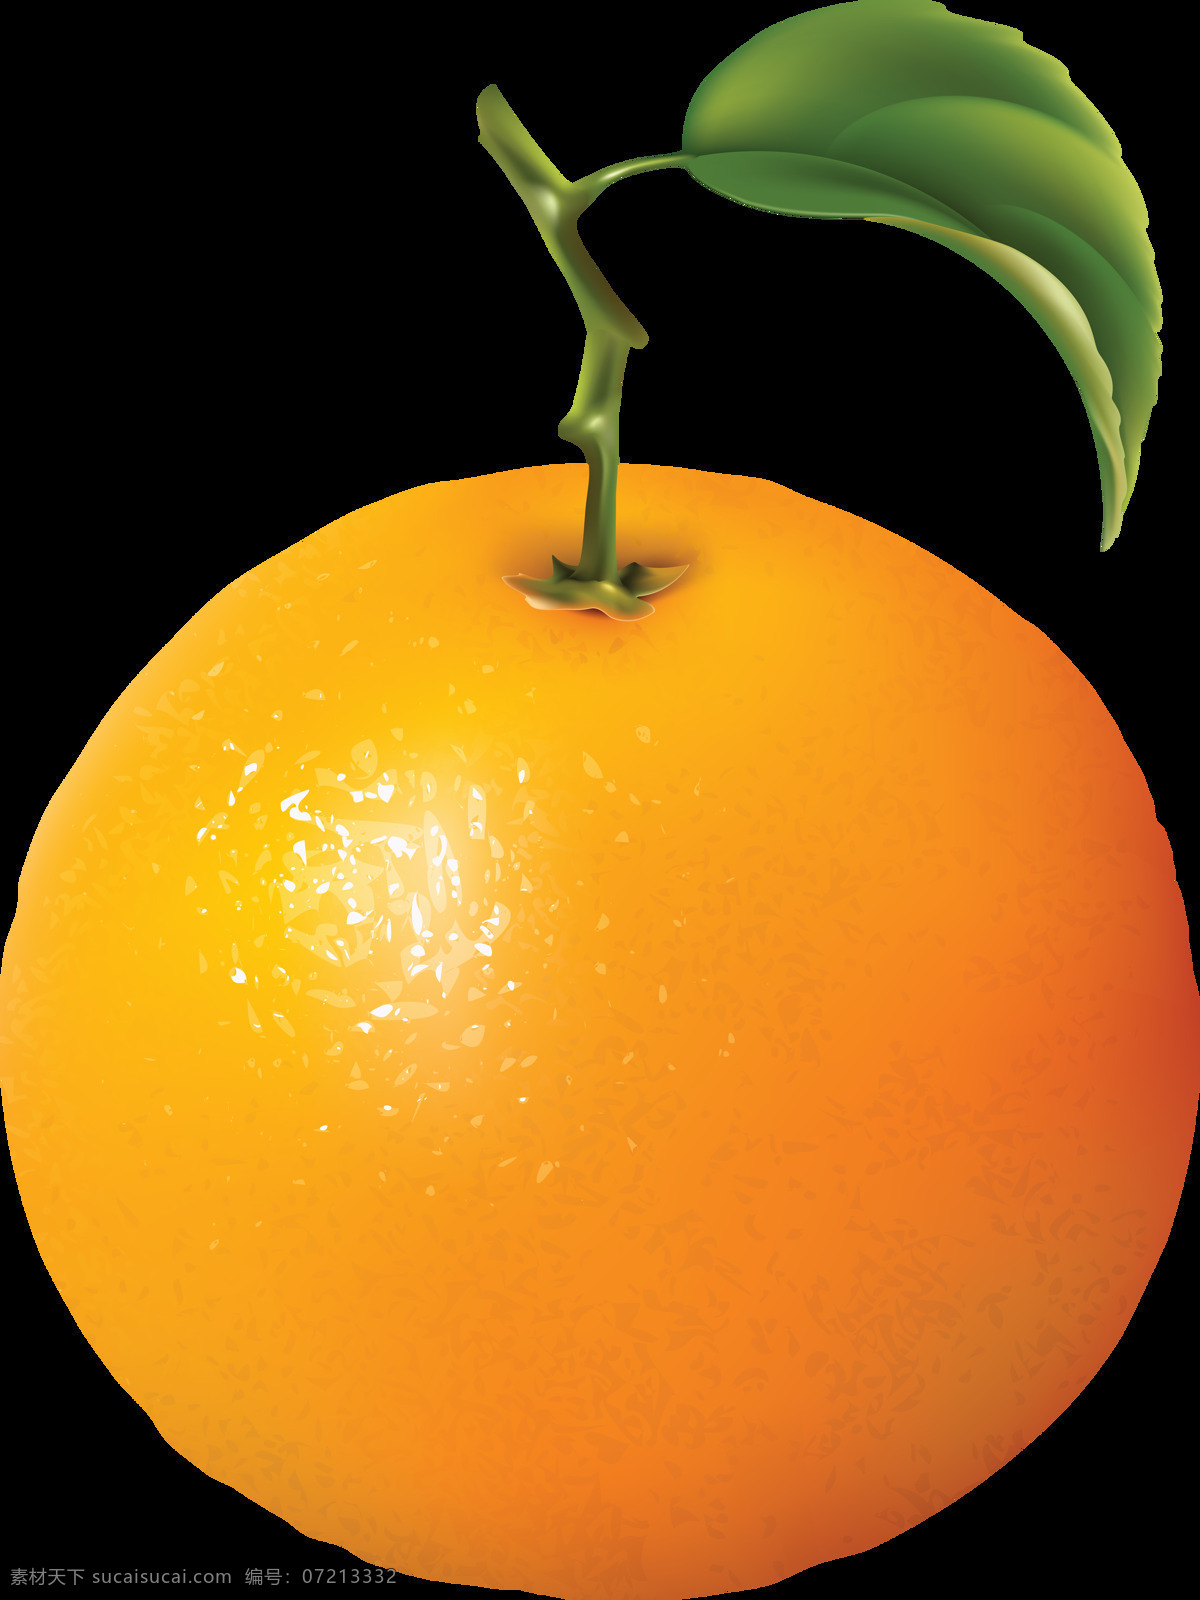 橙子 桔子 橘子 蔬菜 食品 新鲜 美味 美食 素食 蔬菜水果 水果 水果蔬菜 生物世界 设计素材 水果素材 生活用品 生活百科